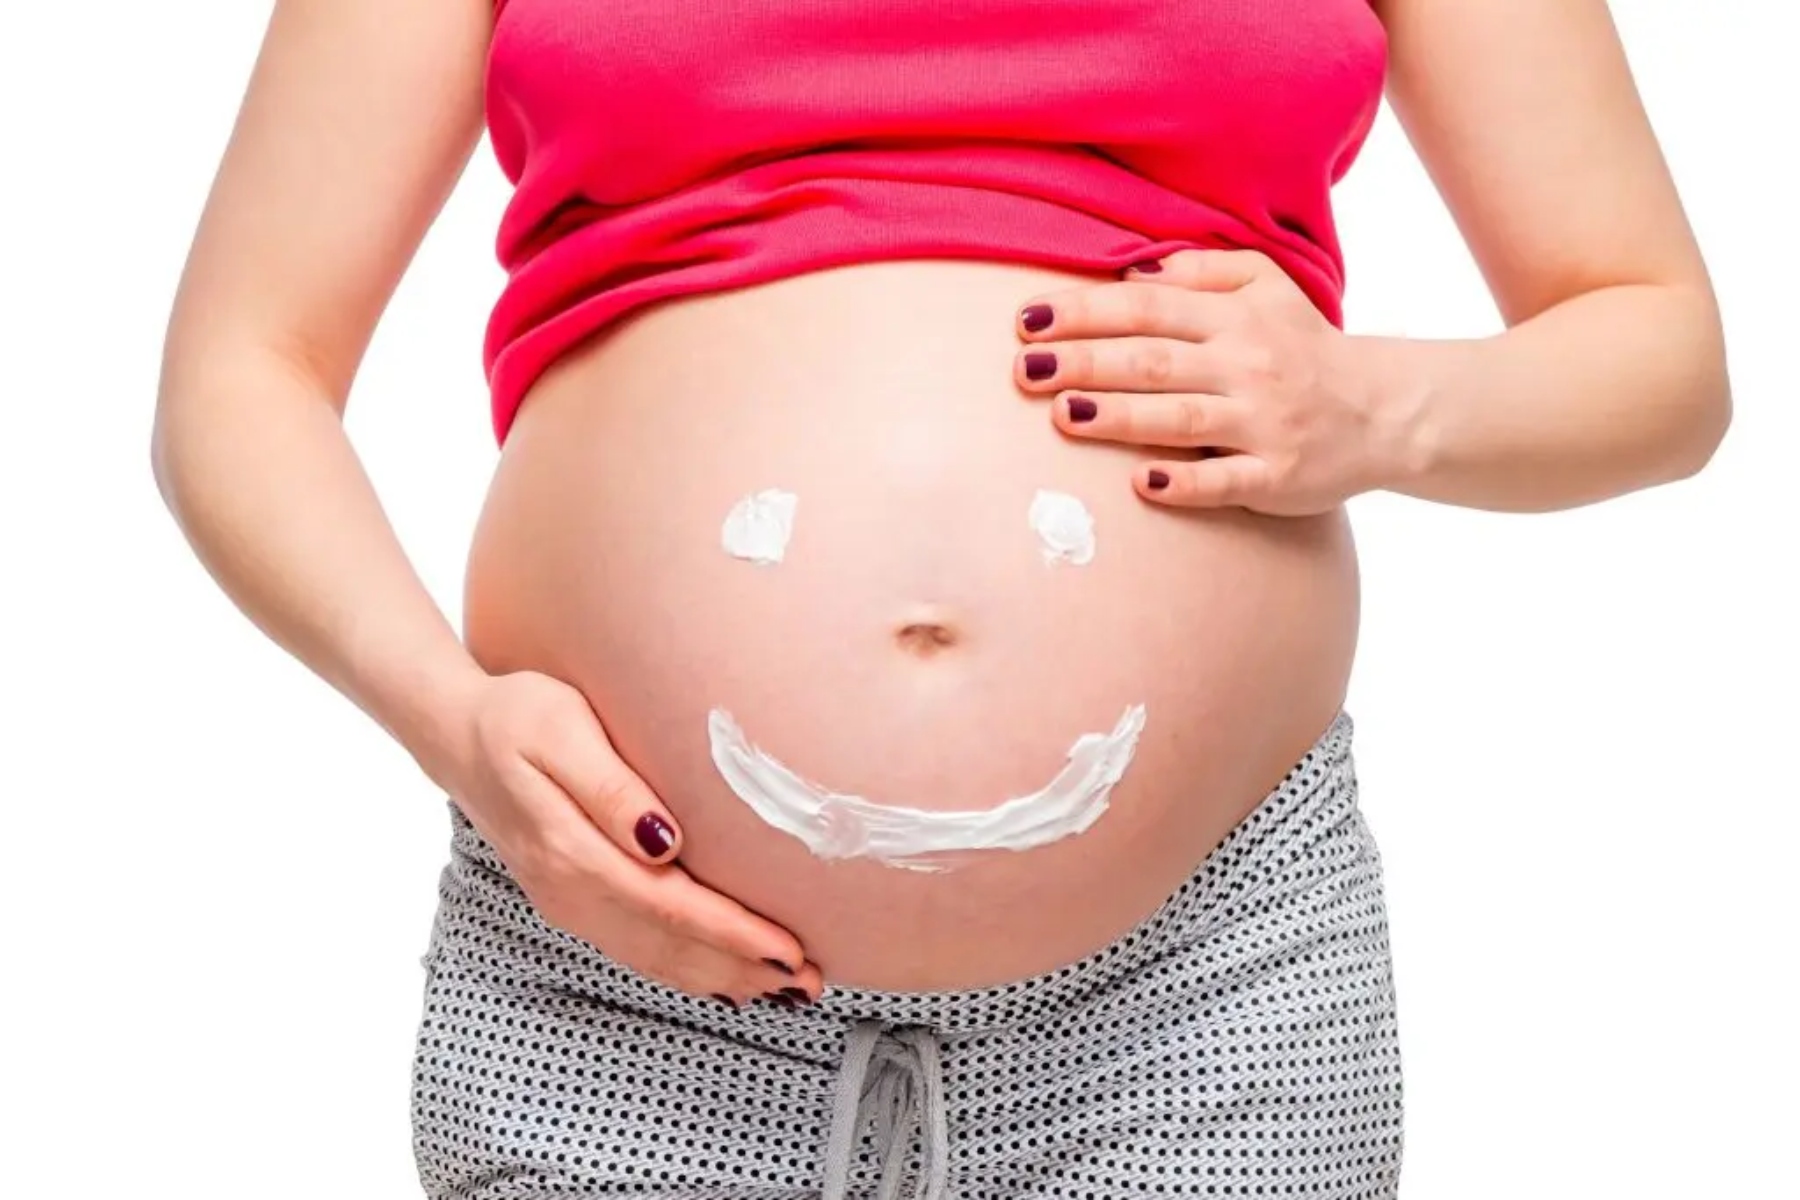 Αυτοφροντίδα εγκυμοσύνη: Μάθε ποια προϊόντα δέρματος είναι ασφαλή για την εγκυμοσύνη